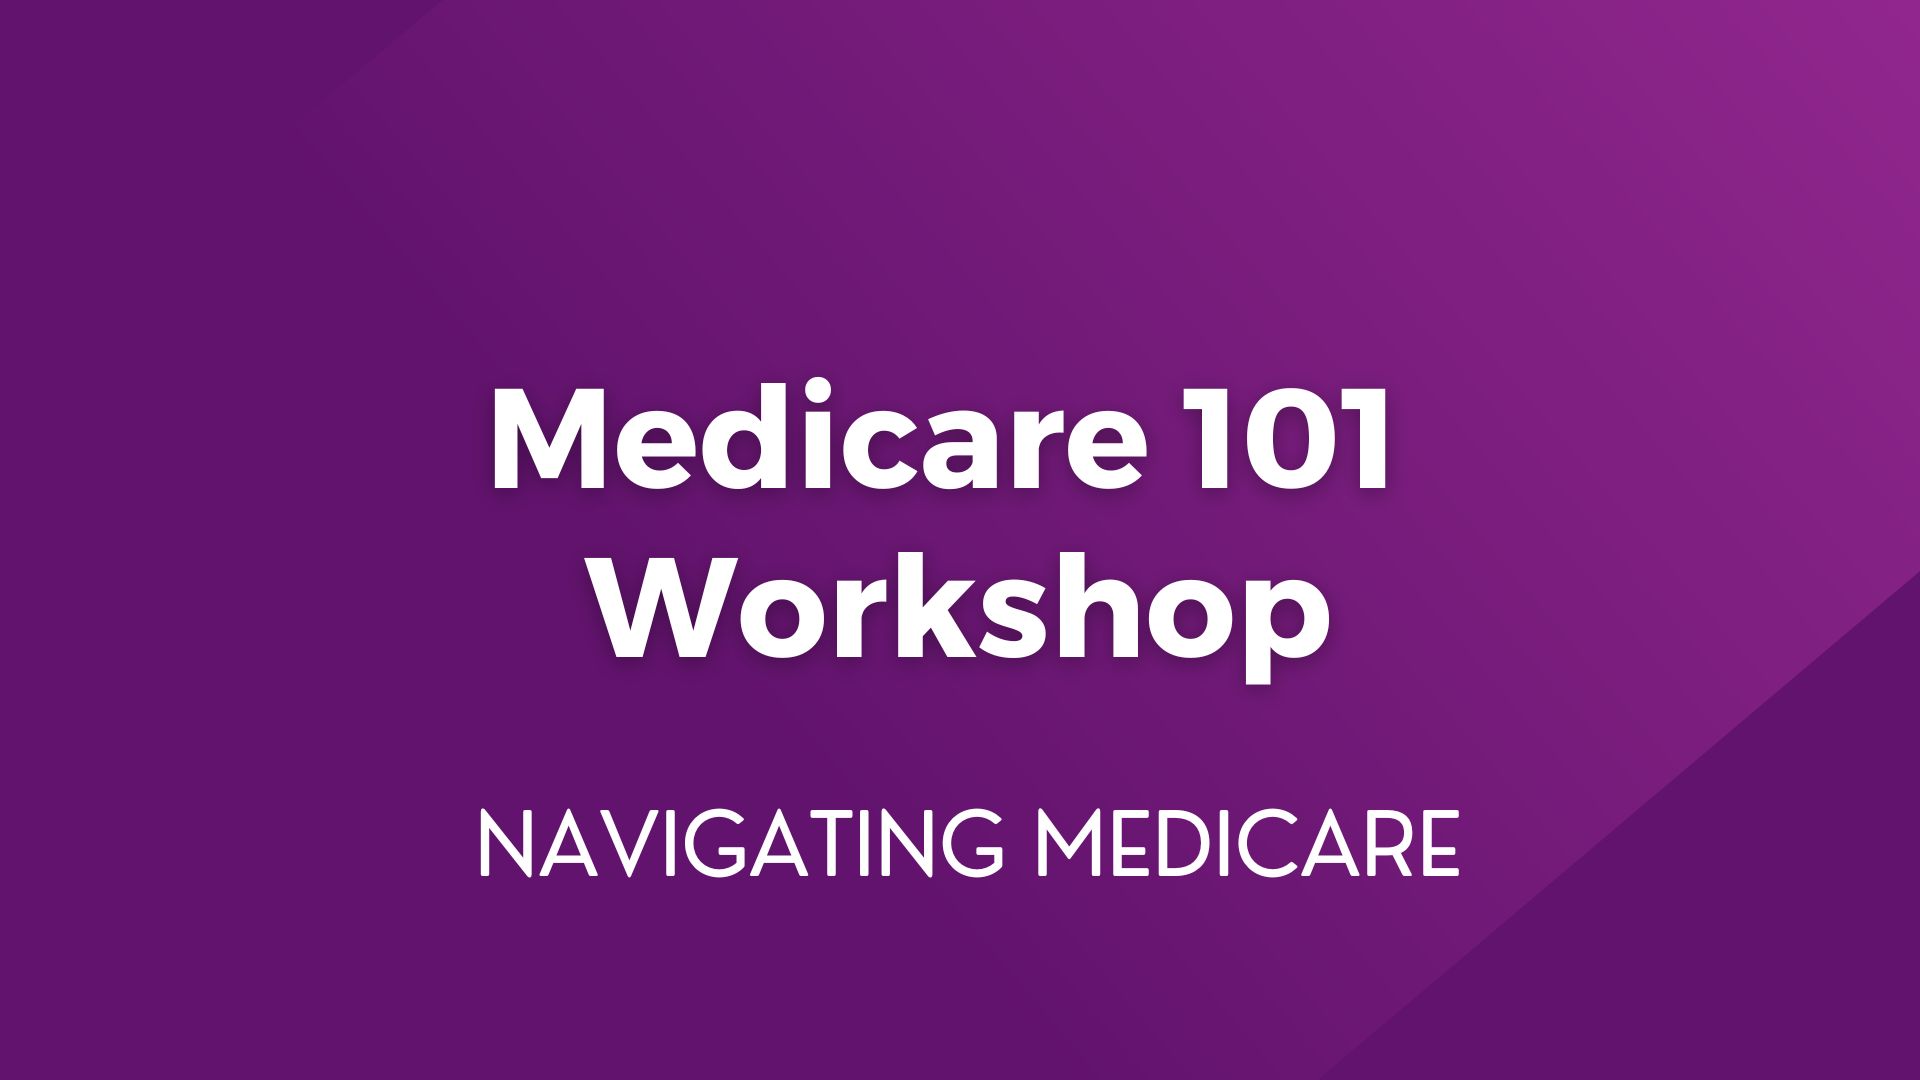 Medicare 101 Workshop – May 9